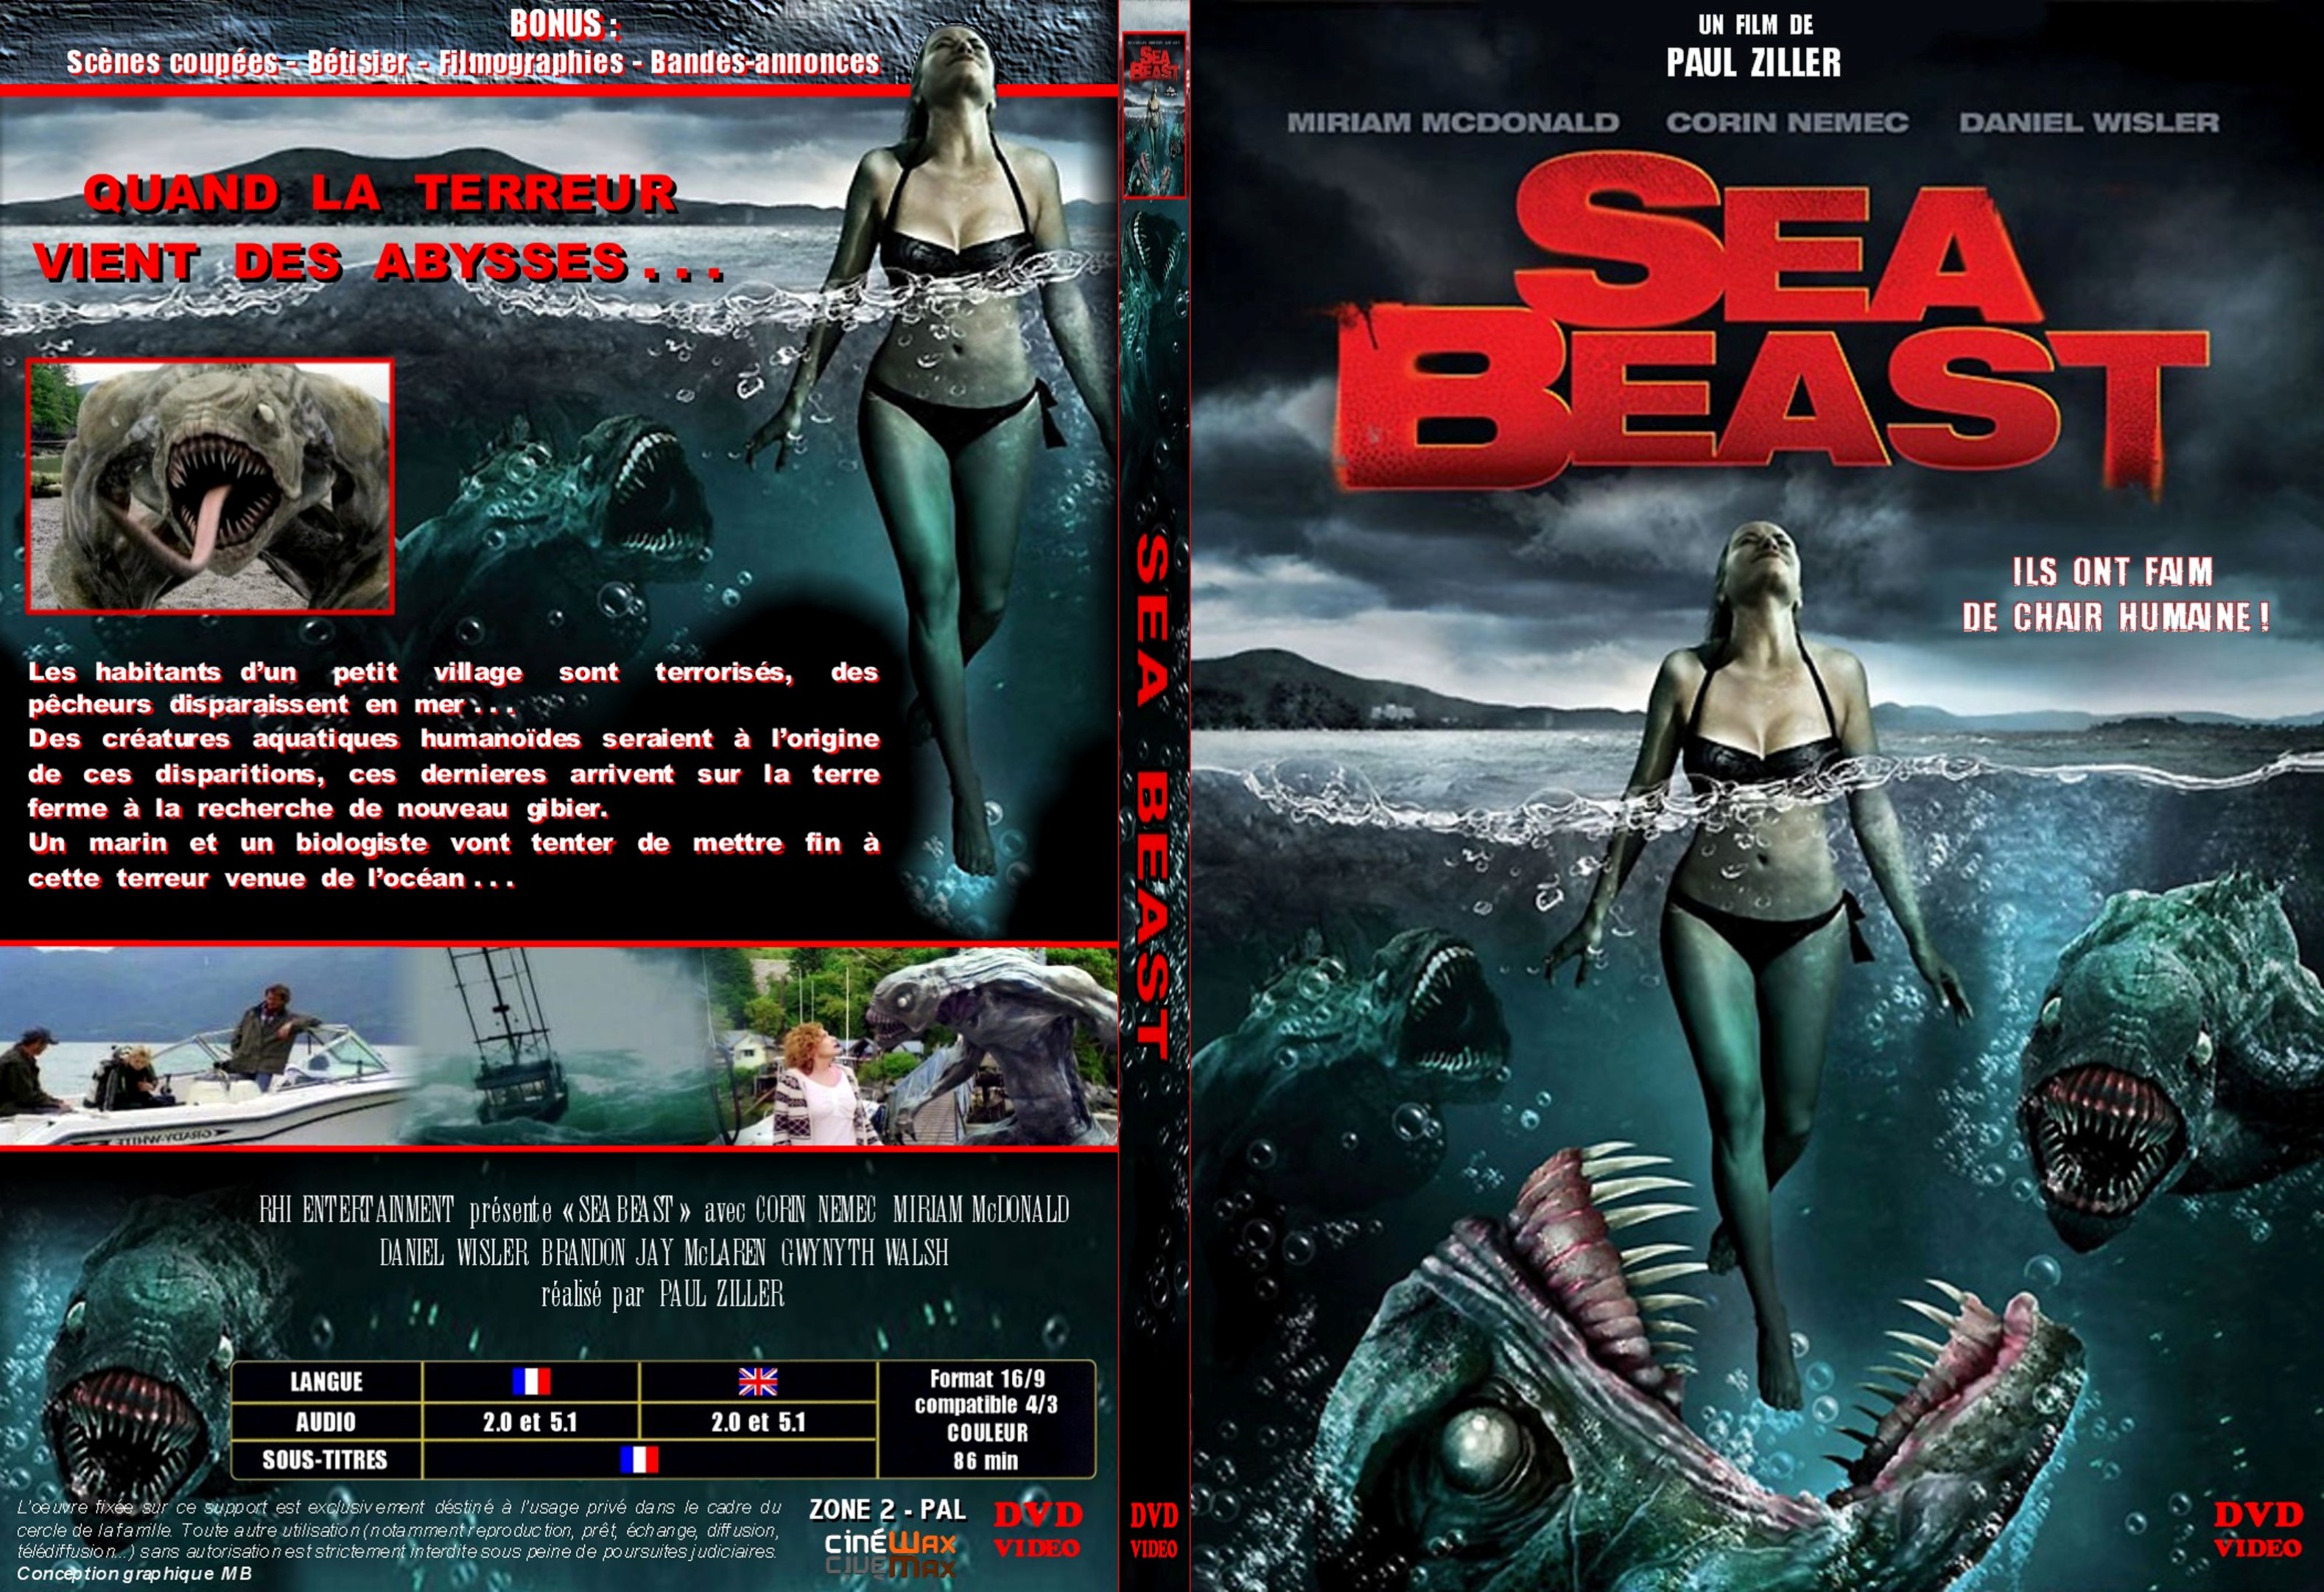 Jaquette DVD Sea beast custom - SLIM